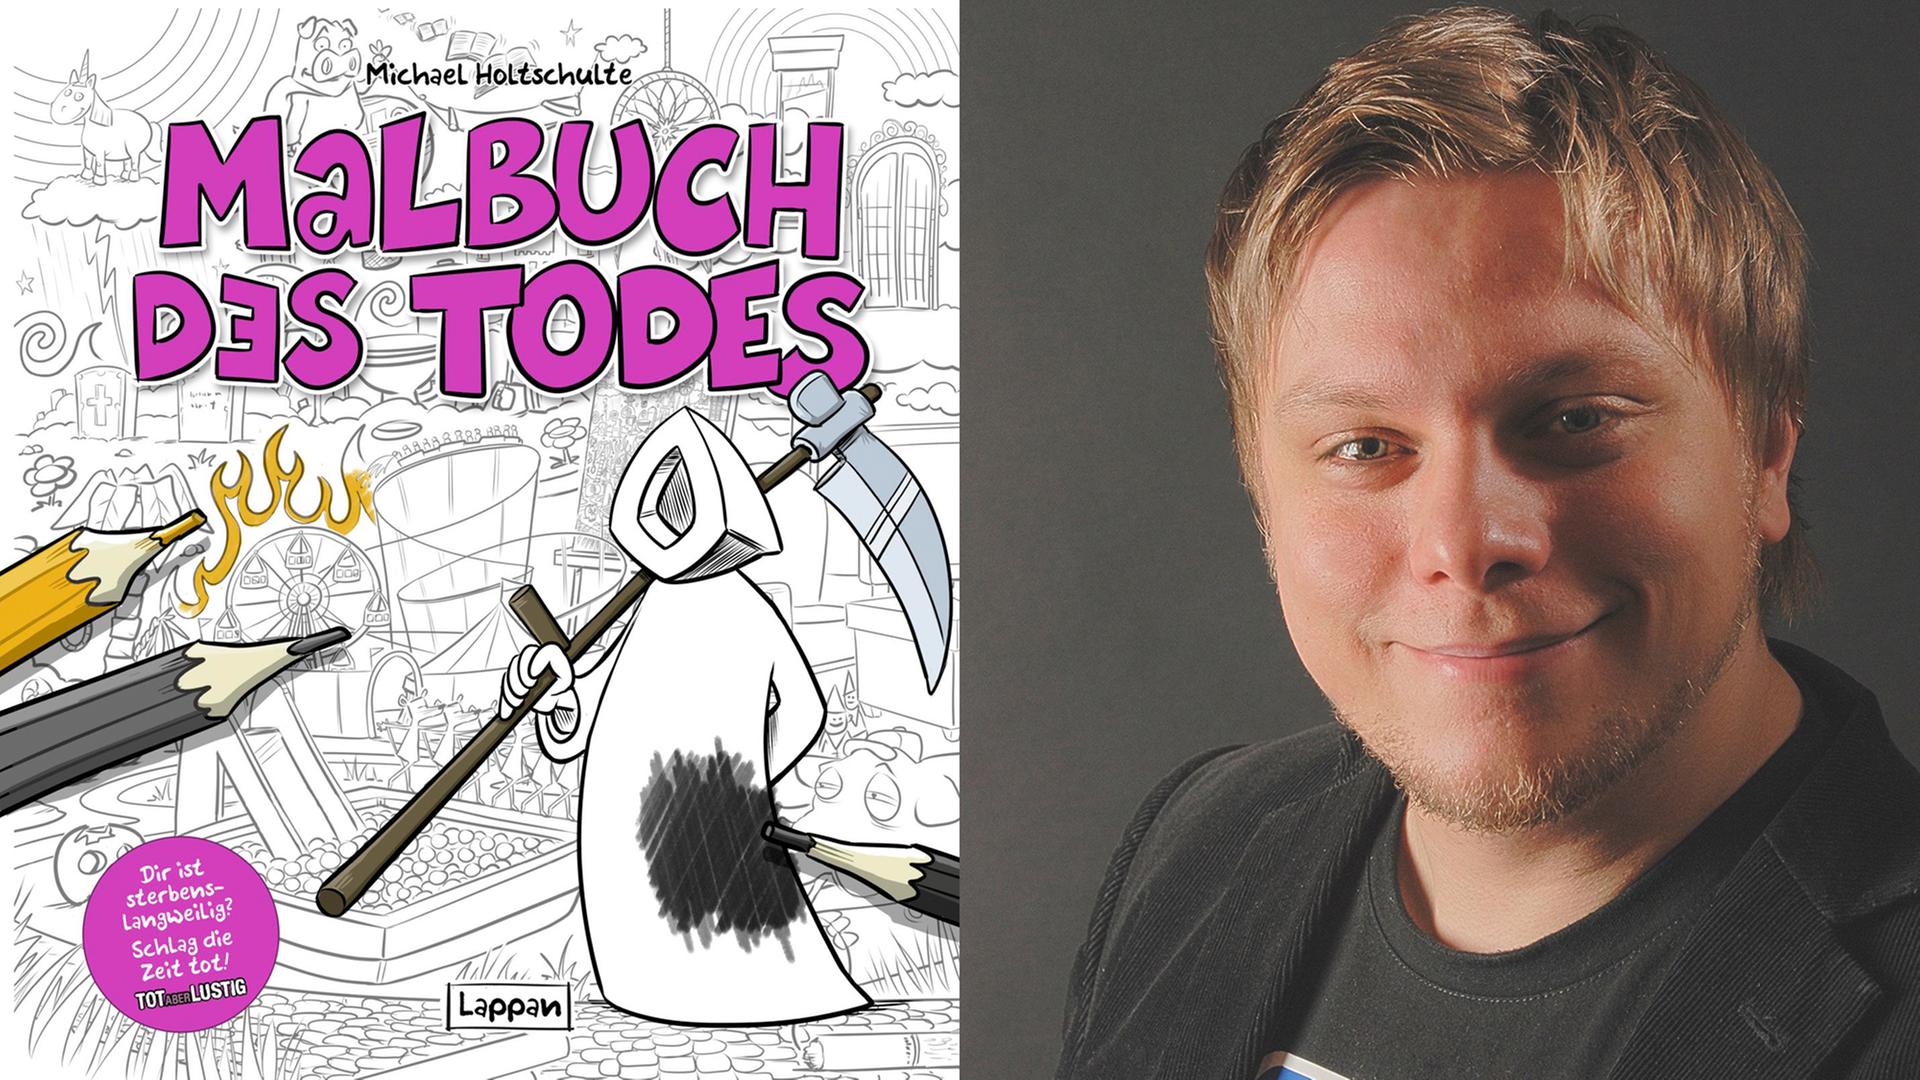 Michael Holtschulte und sein neuer Cartoonband "Malbuch des Todes"